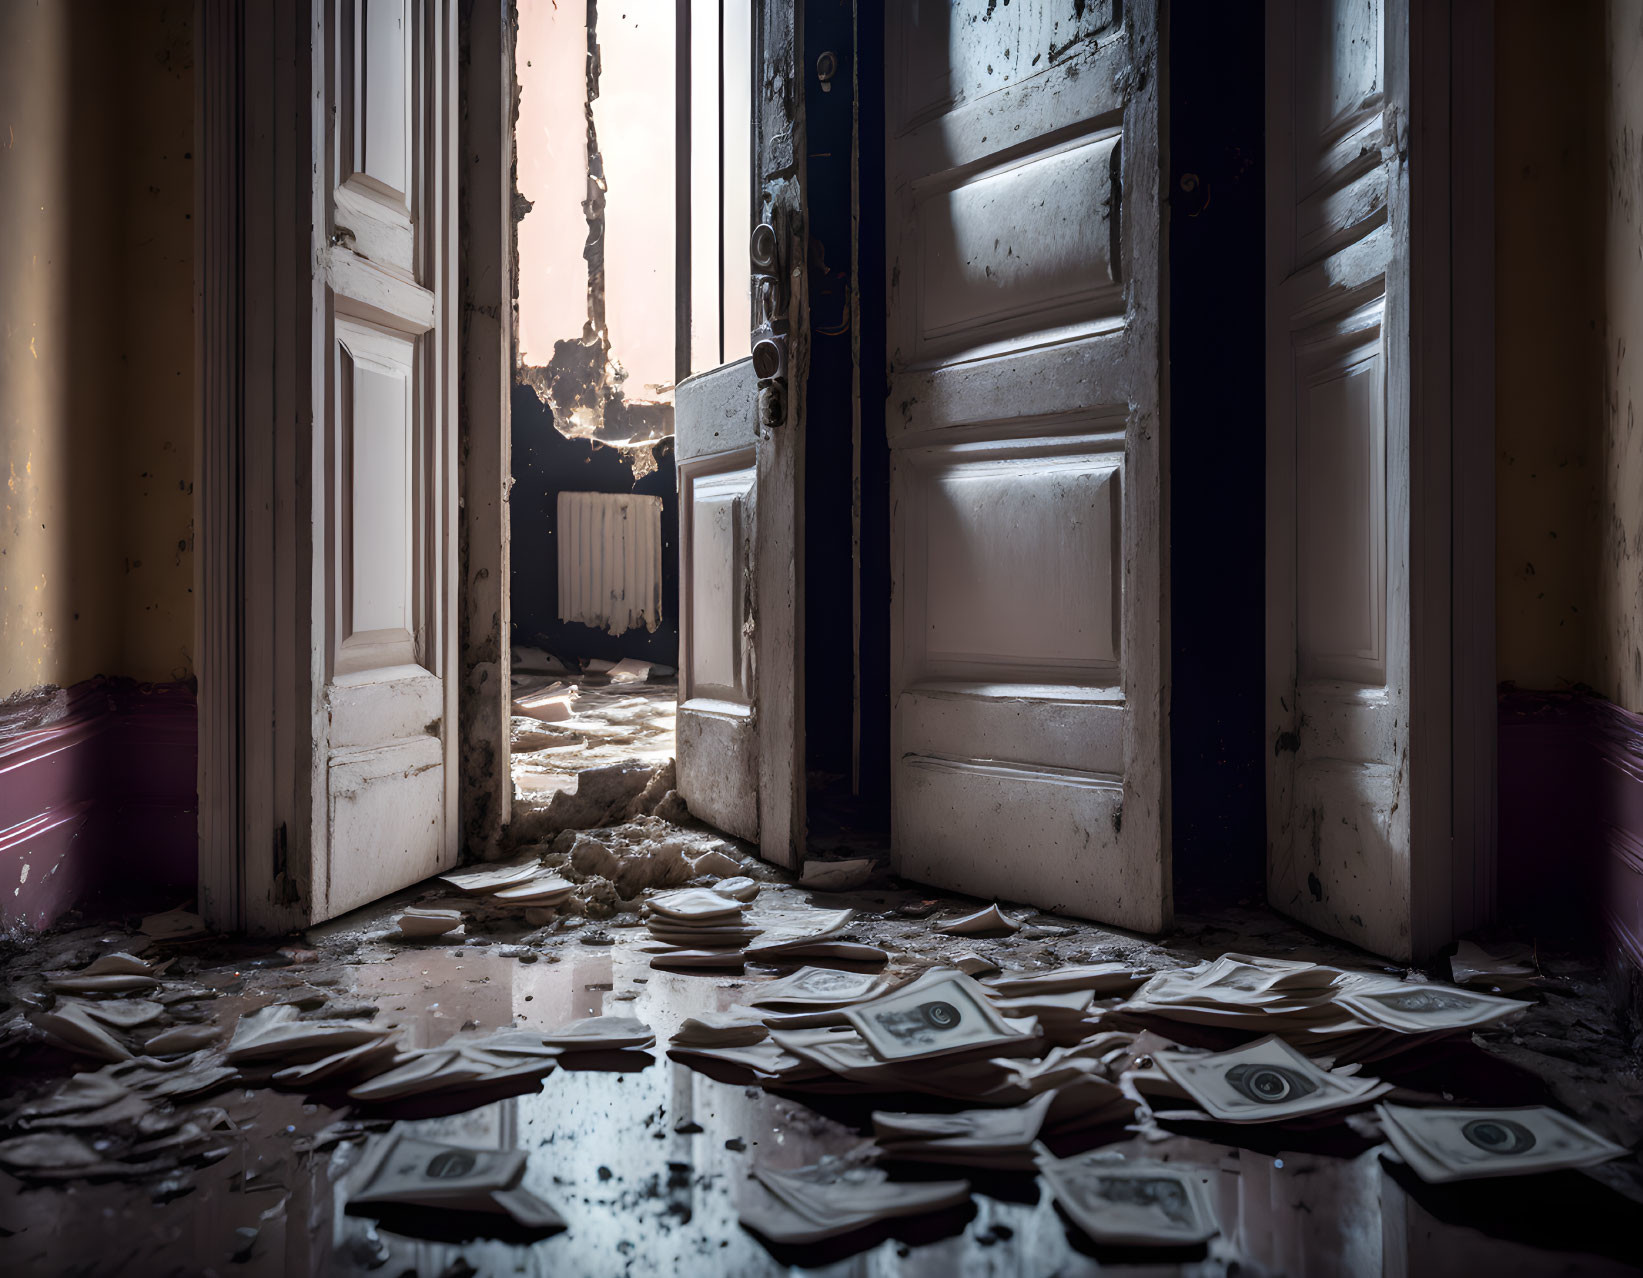 Abandoned room with scattered money and broken door.